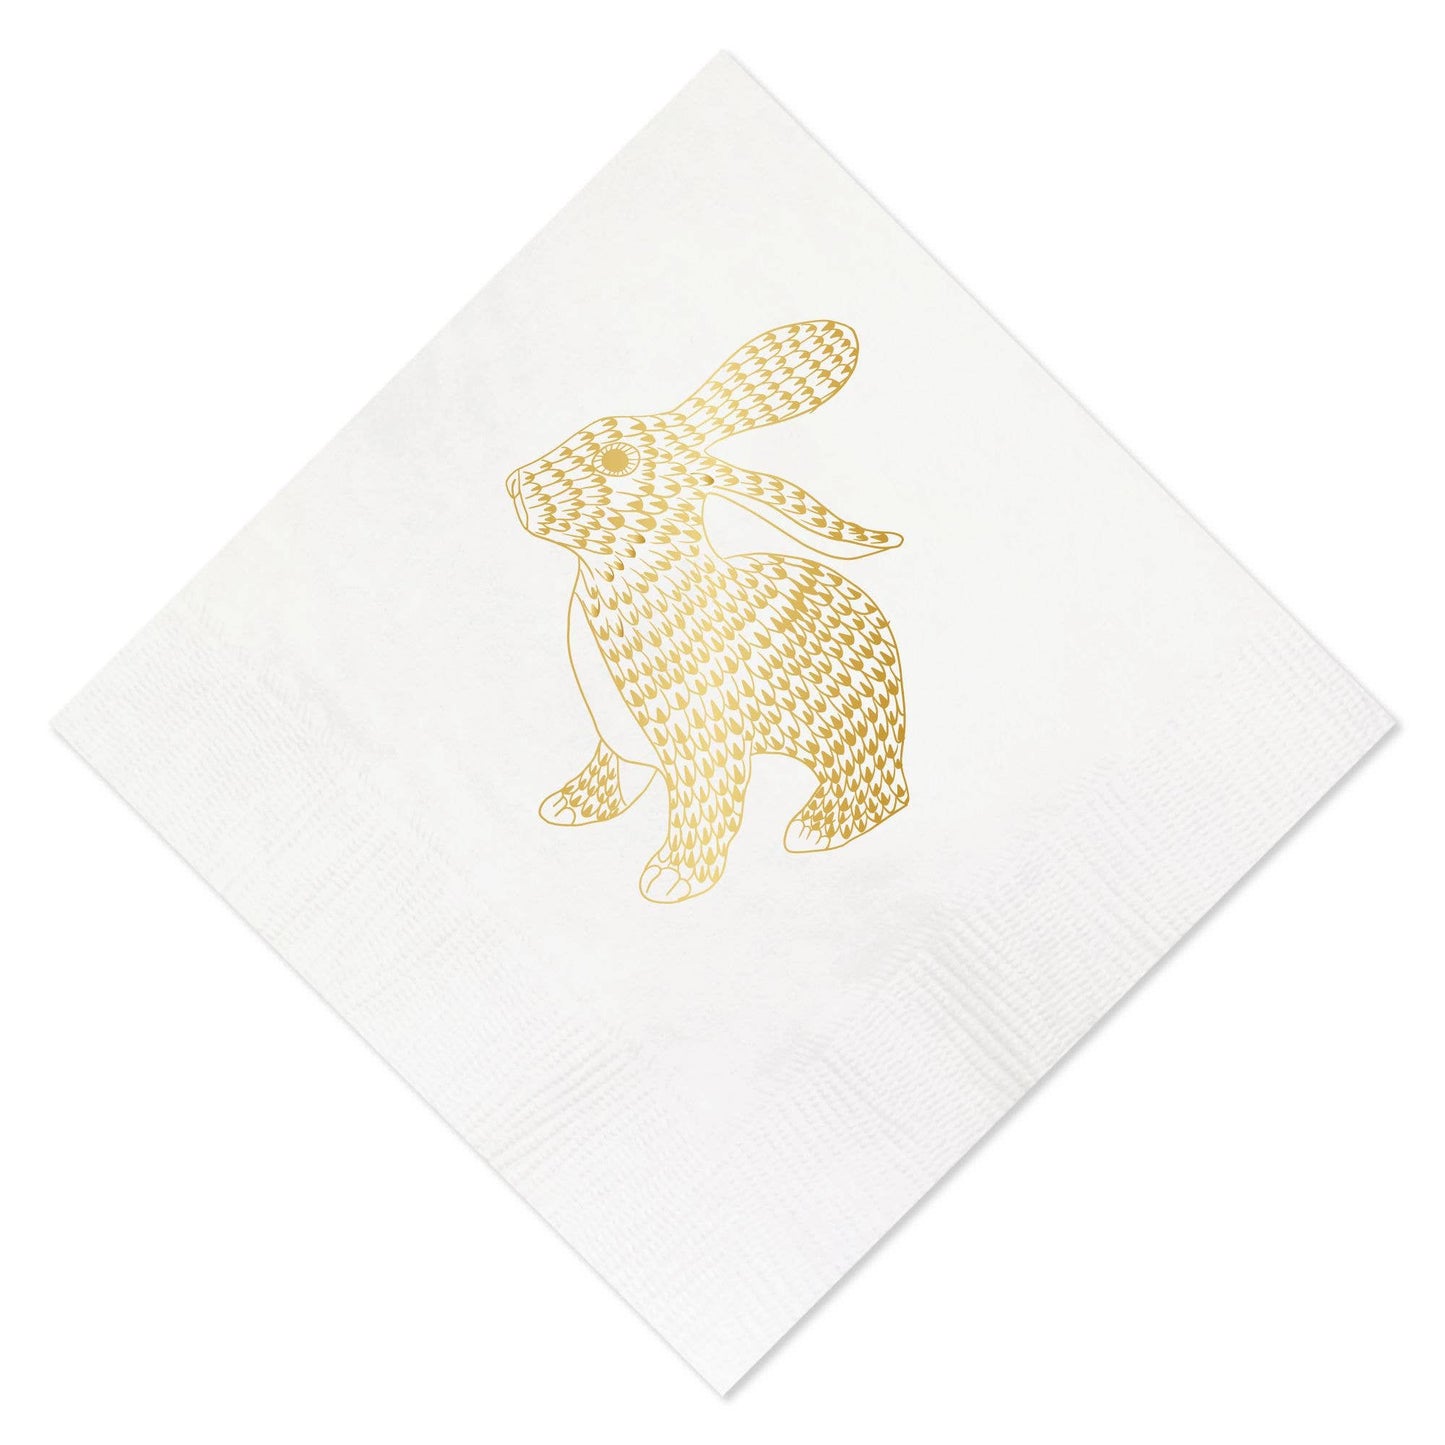 Gold Foil Bunny Napkins - Easter